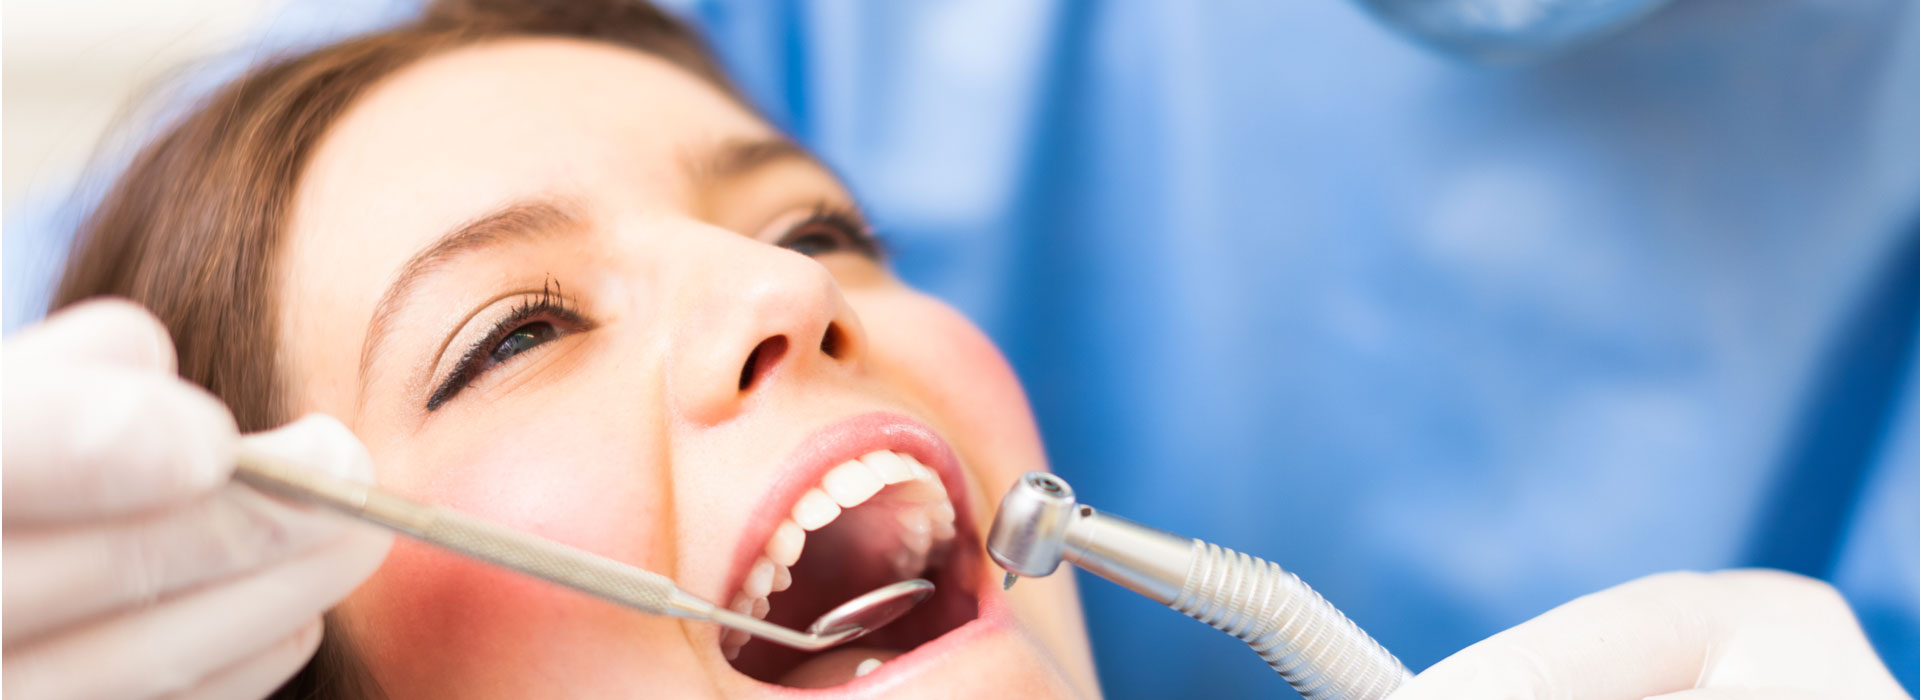 Woman at dental